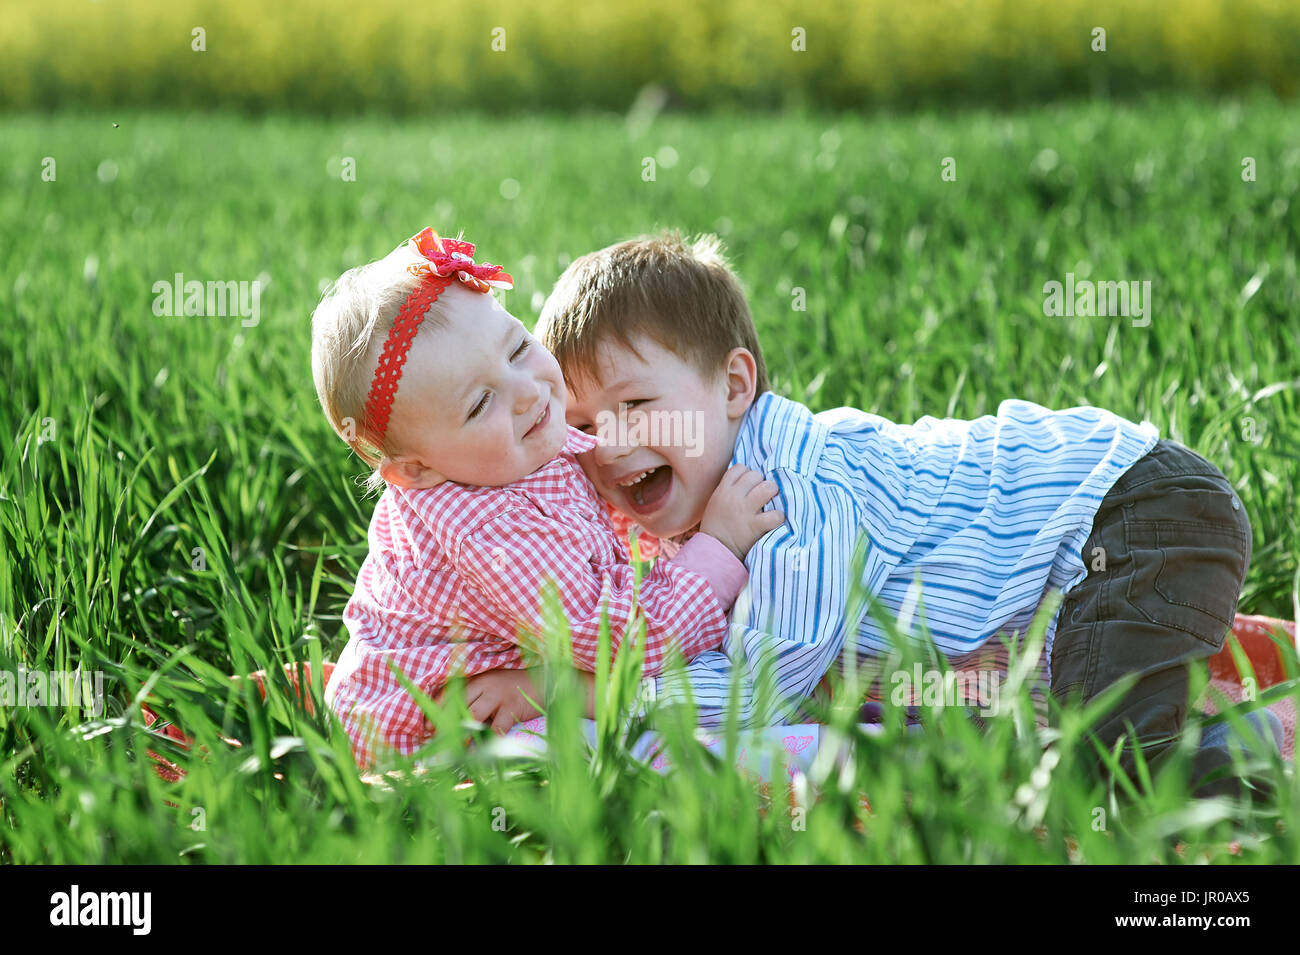 Petits enfants garçon et fille jouer sur l'herbe verte Banque D'Images